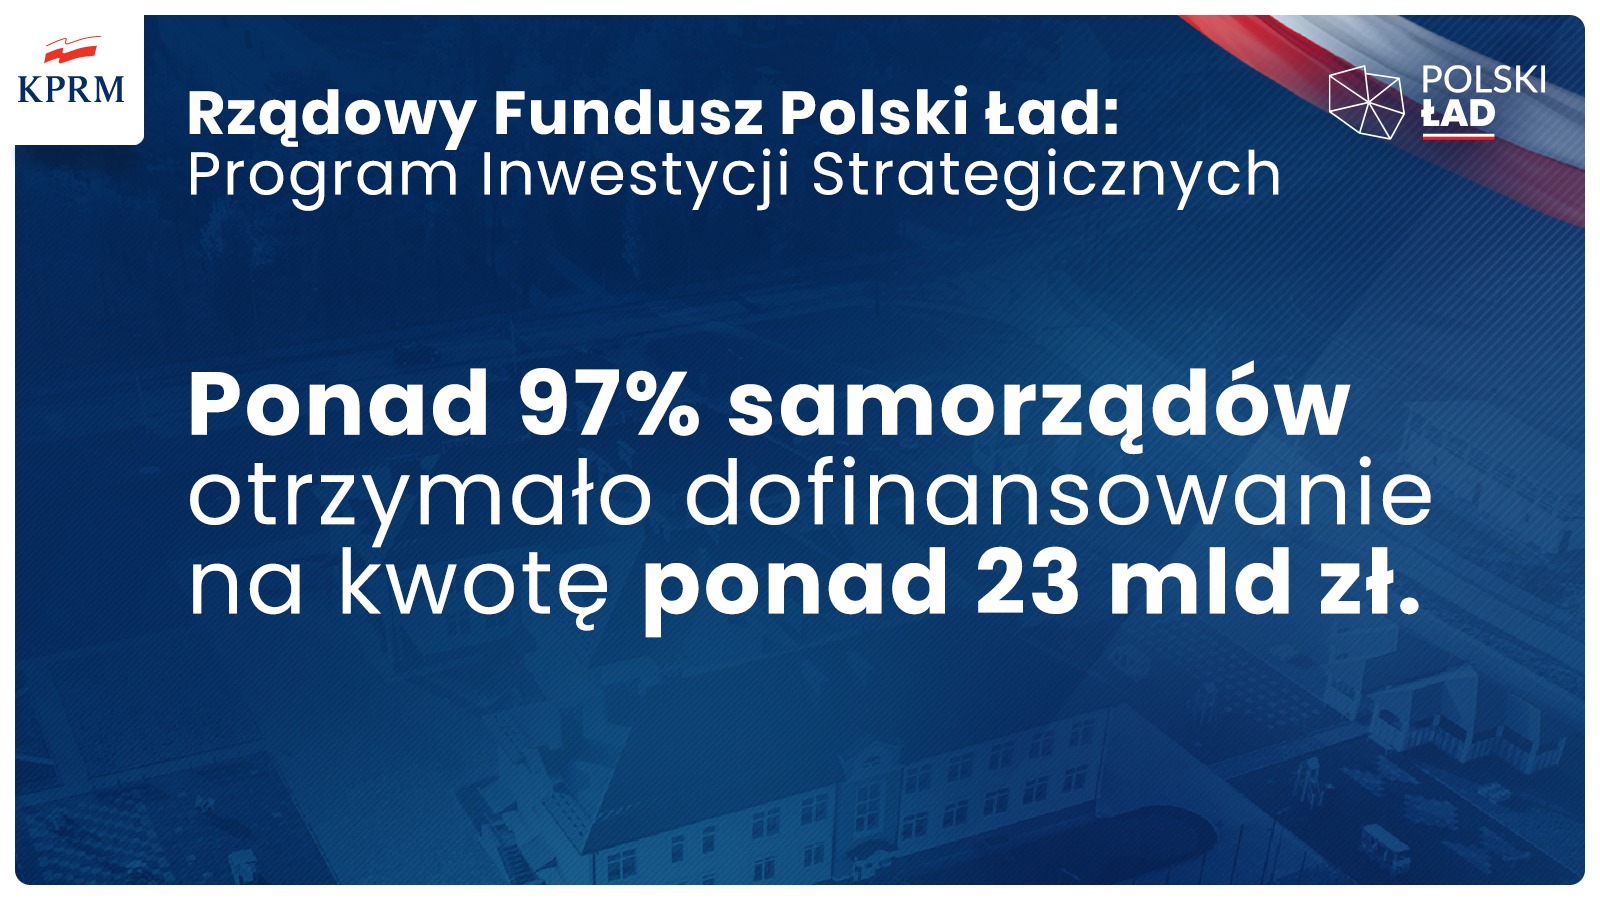 Ponad 97% samorządów otrzymało dofinansowanie z Rządowego Funduszu Polski Ład!